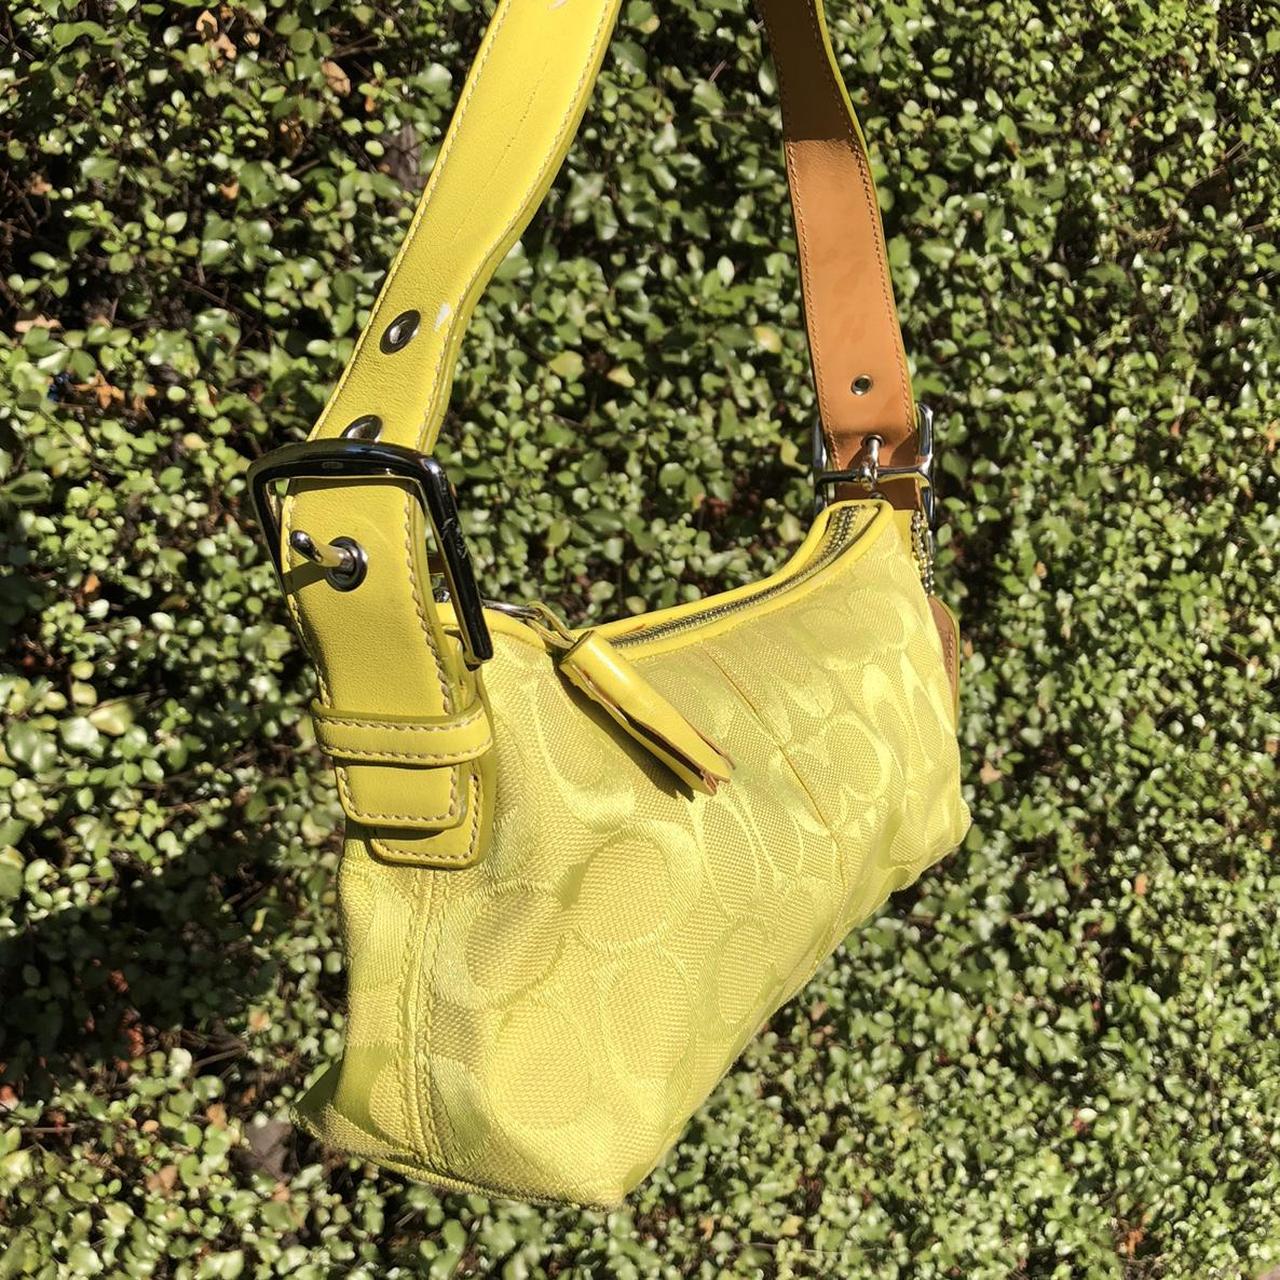 Lime Green Coach Shoulder Bag Super easy to wear, - Depop